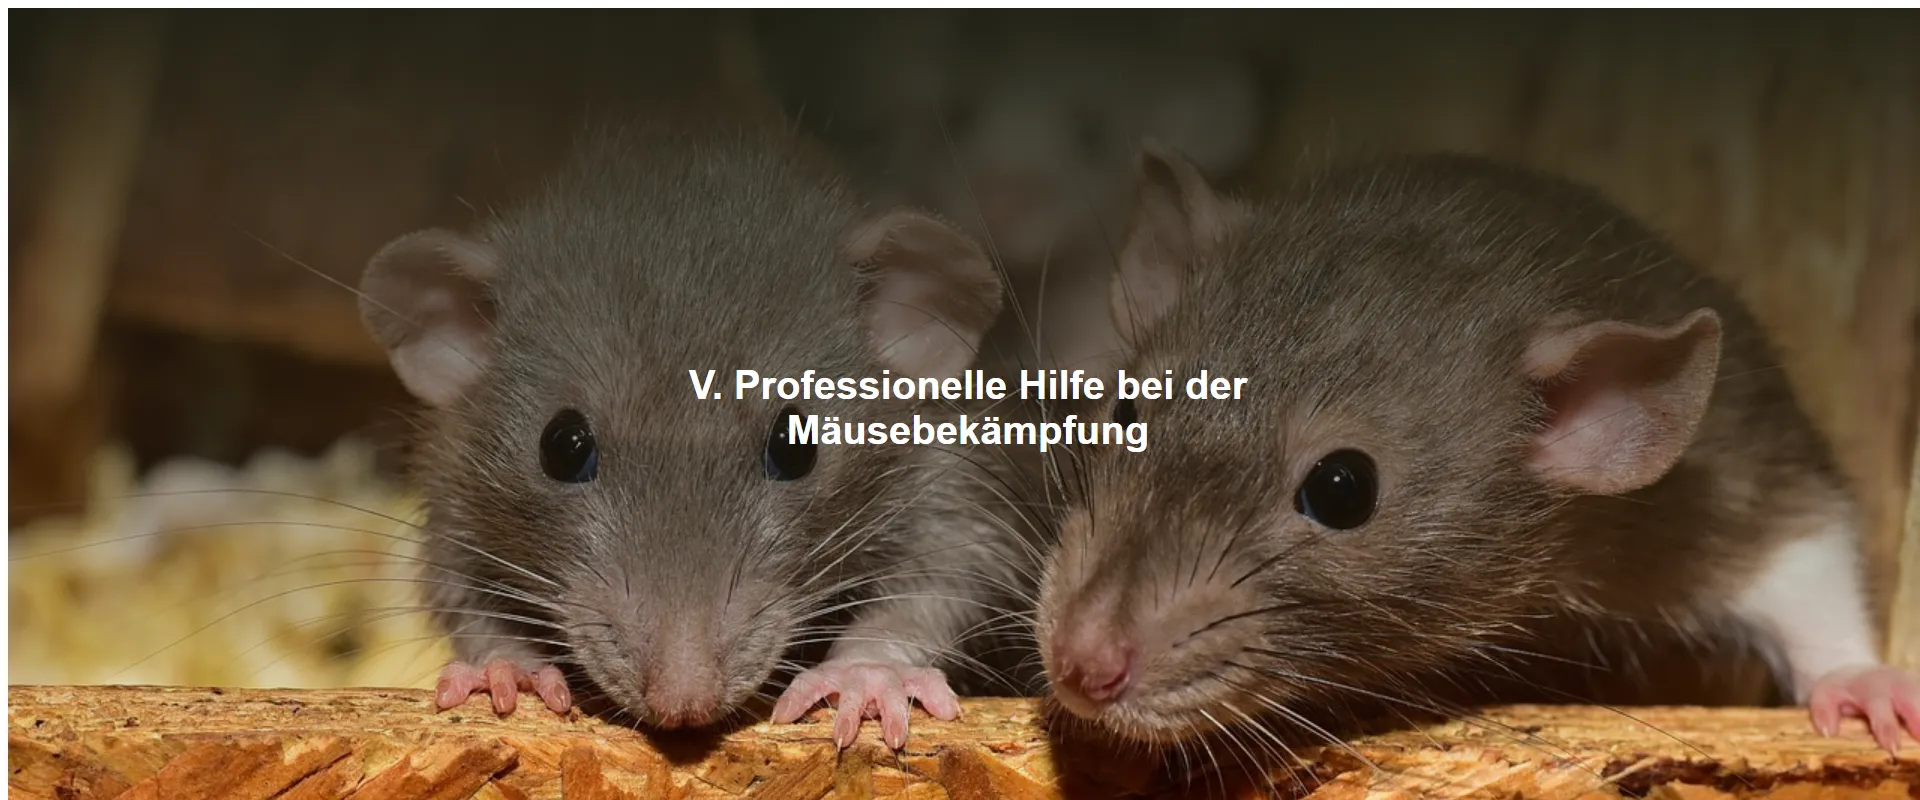 Professionelle Hilfe bei der Mäusebekämpfung